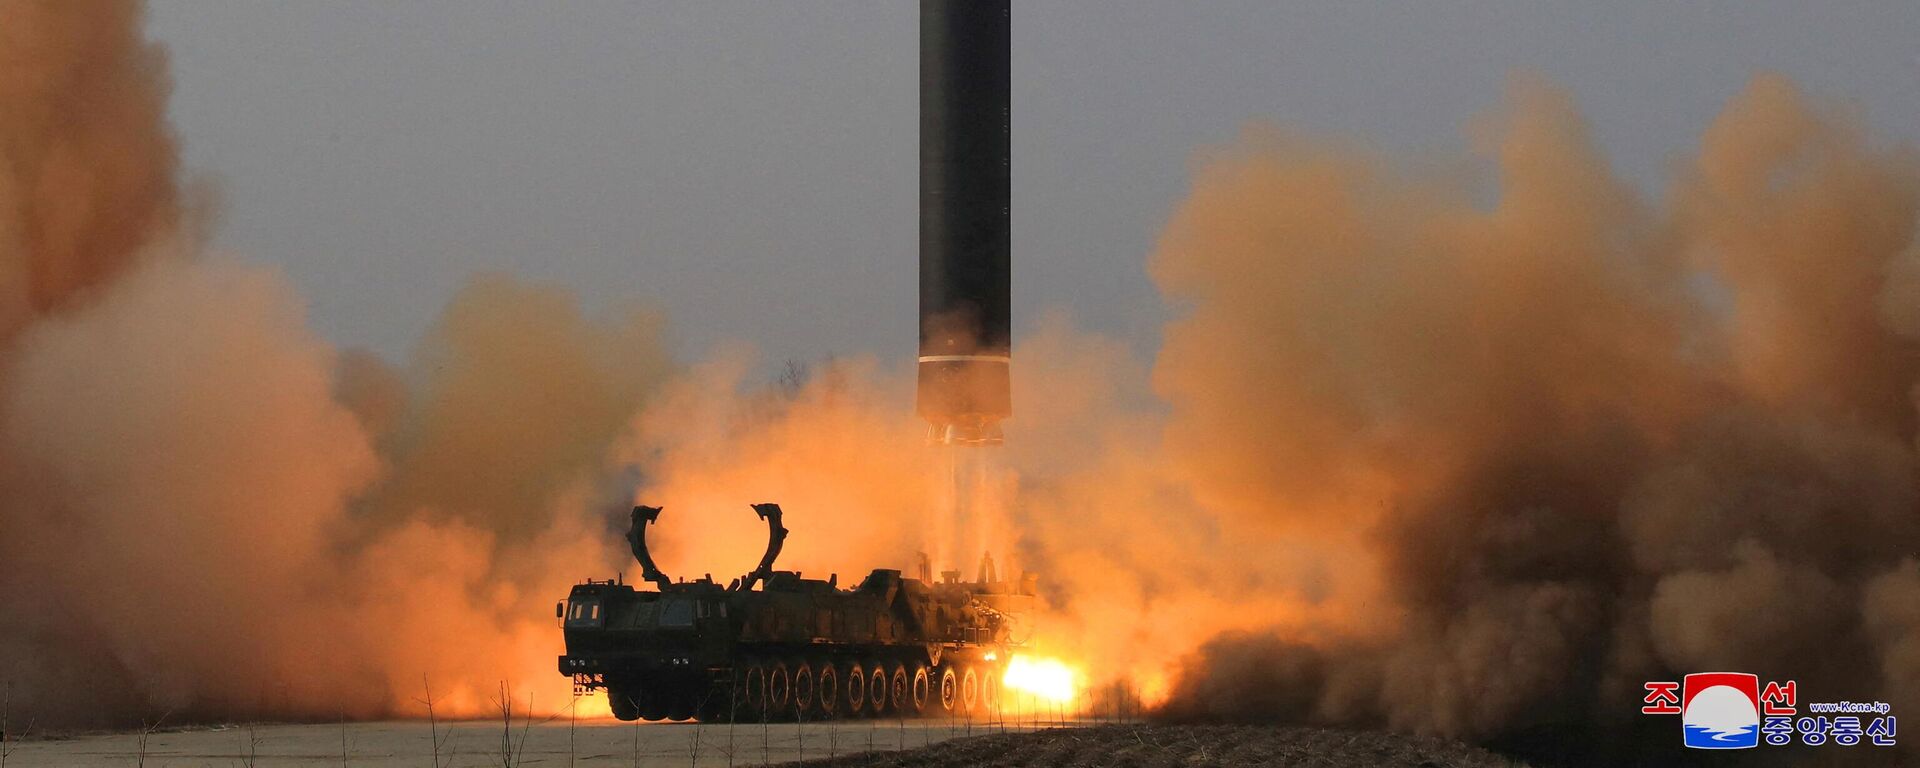 67.5 dakika boyunca maksimum 6248.5 km irtifada 1090 km menzille uçan Hwasong-17, Kuzey Kore'nin önceki kıtalararası balistik füze (ICBM) denemelerinden farklı olarak, doğrudan bir taşıyıcı, erektör, fırlatıcı (TEL) aracından fırlatıldı. Reuters'e konuşan uzmanlar Hwasong-17'yi, 'canavar füze', 'dünyadaki en büyük mobil, sıvı yakıtlı ICBM' diye niteledi.  - Sputnik Türkiye, 1920, 28.10.2022